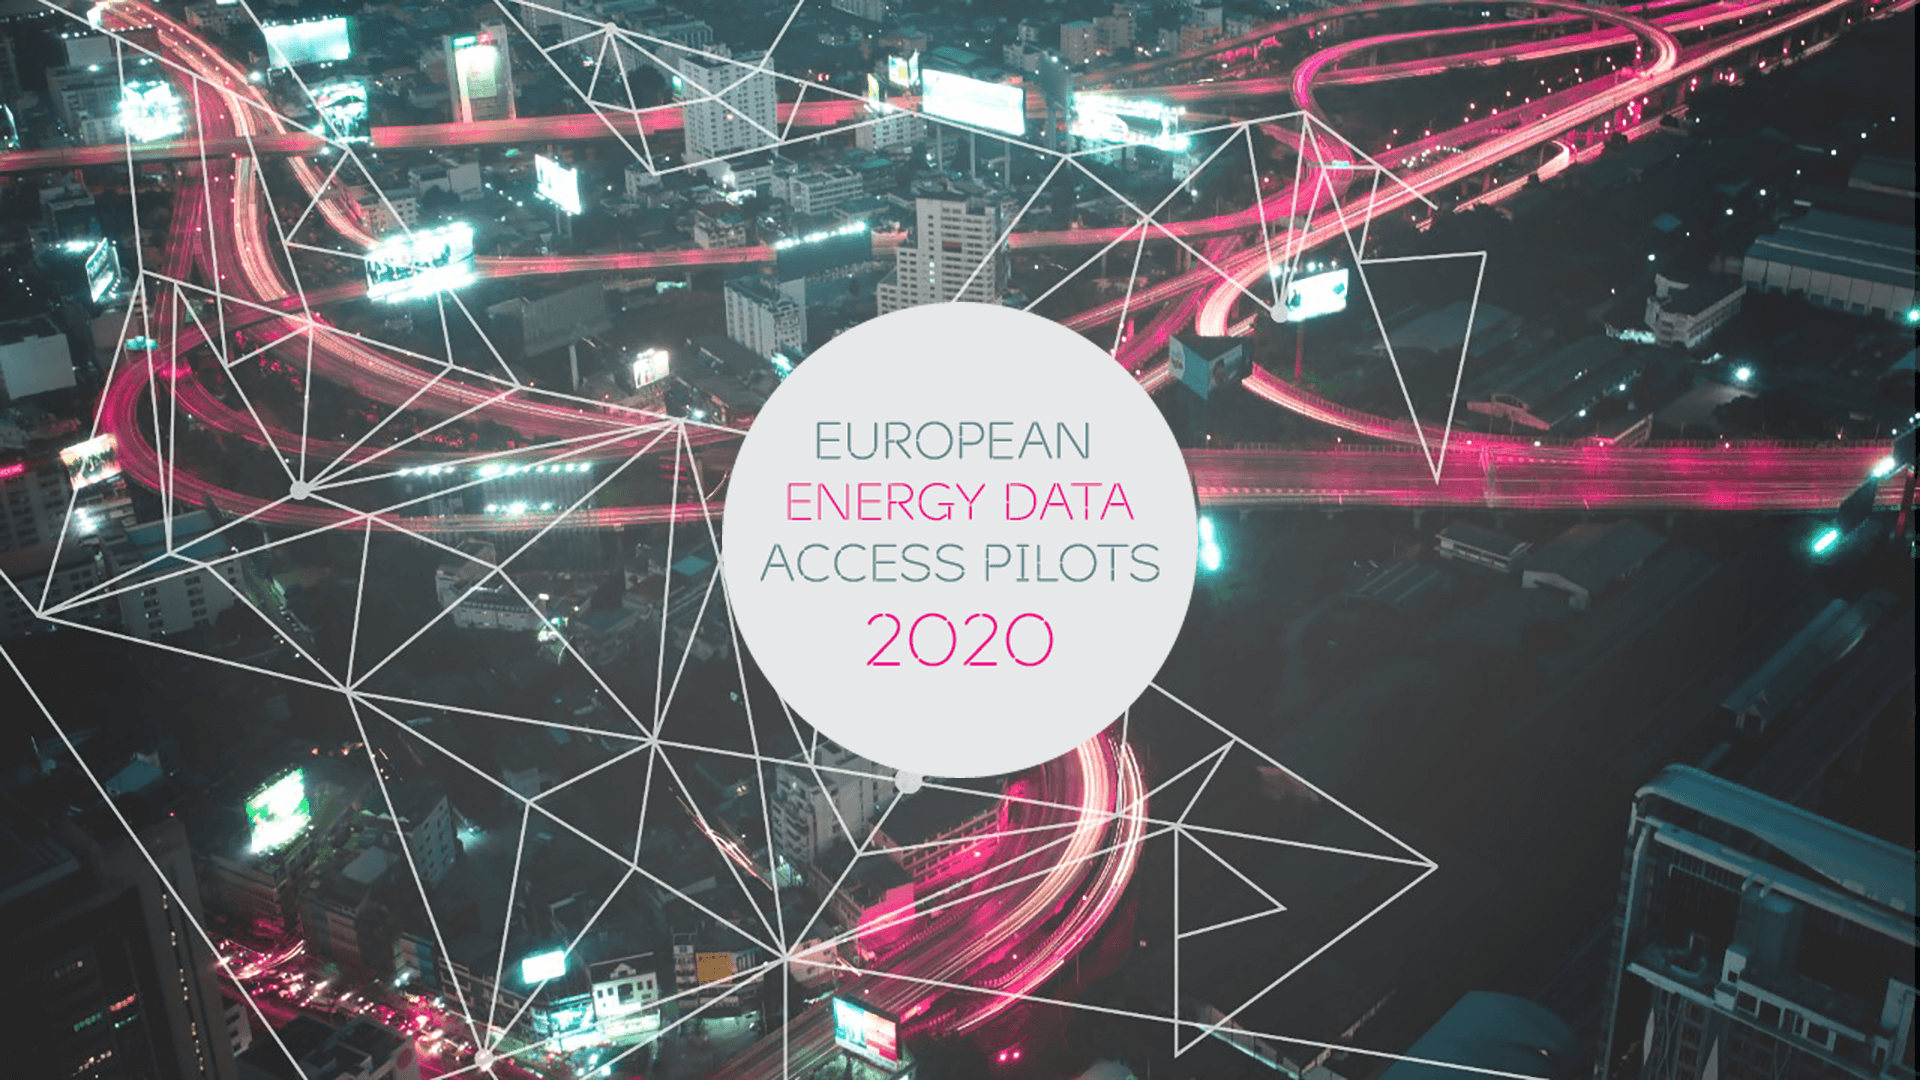 Critical Software gewinnt European Energy Data Access Pilots 2020 